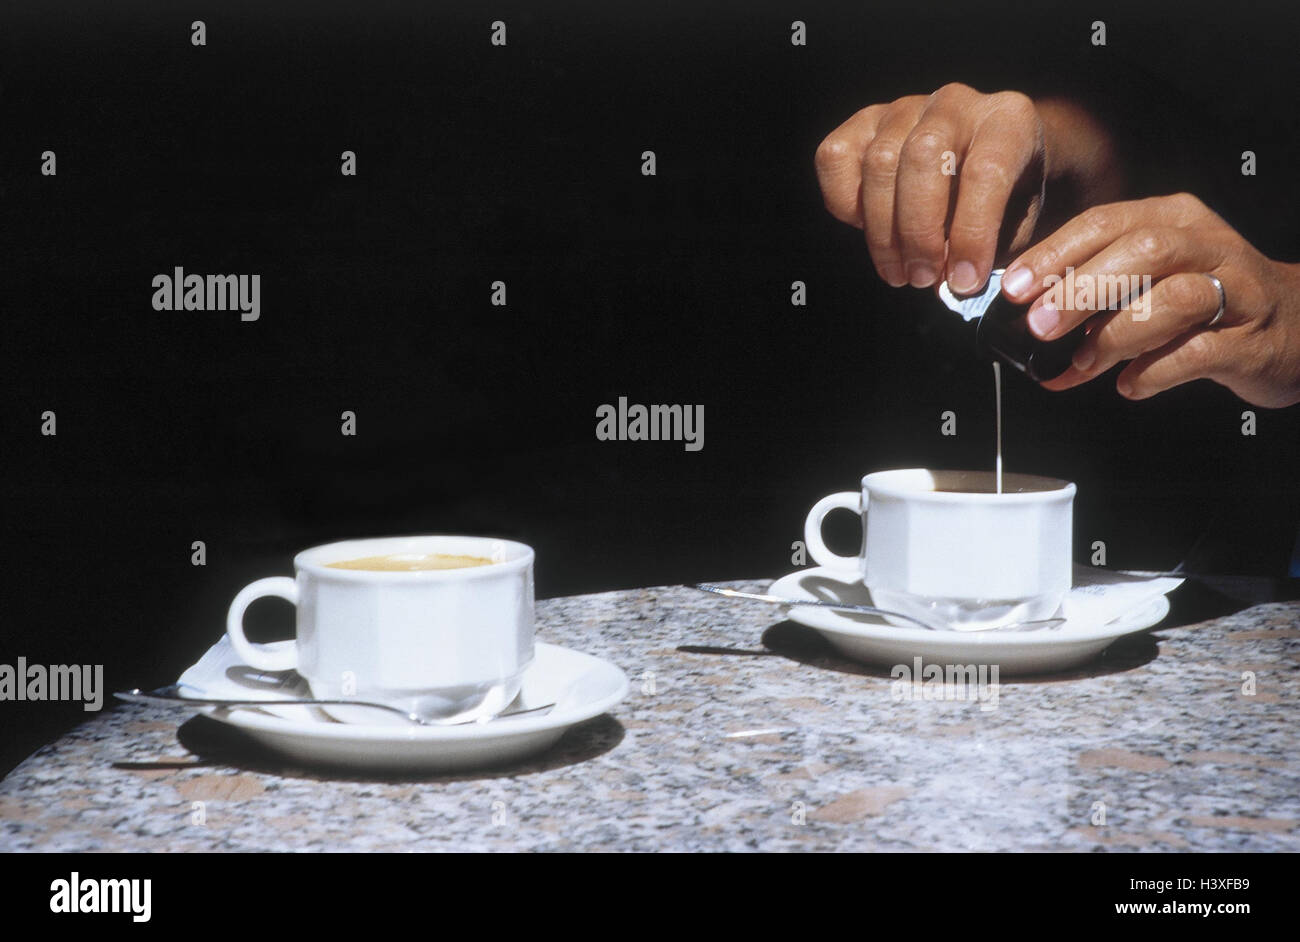 Tisch, Kaffeetassen, Hände, Milch, Mann, Detail, Tassen, zwei, Kaffee,  Getränk, Kaffee trinken, innen, Sommer, draußen, Tasse, Kondensmilch,  Kaffeemilch, Heißgetränk, koffeinhaltigen, Luxus, Kaffeepause  Stockfotografie - Alamy